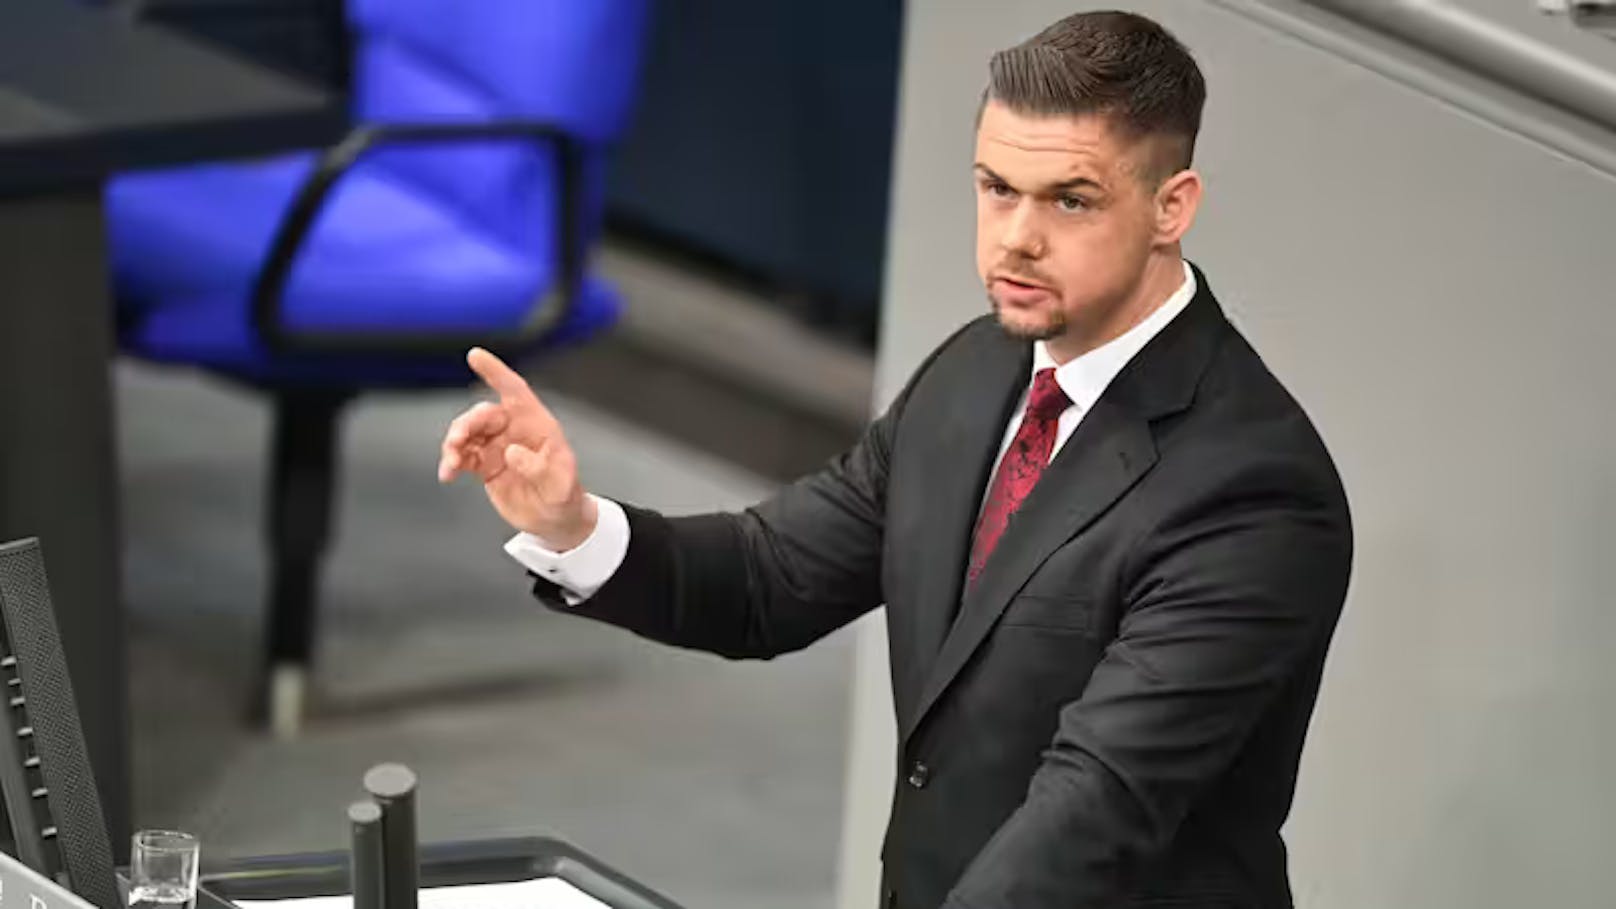 Bundestag hebt erneut Immunität von AfD-Politiker auf